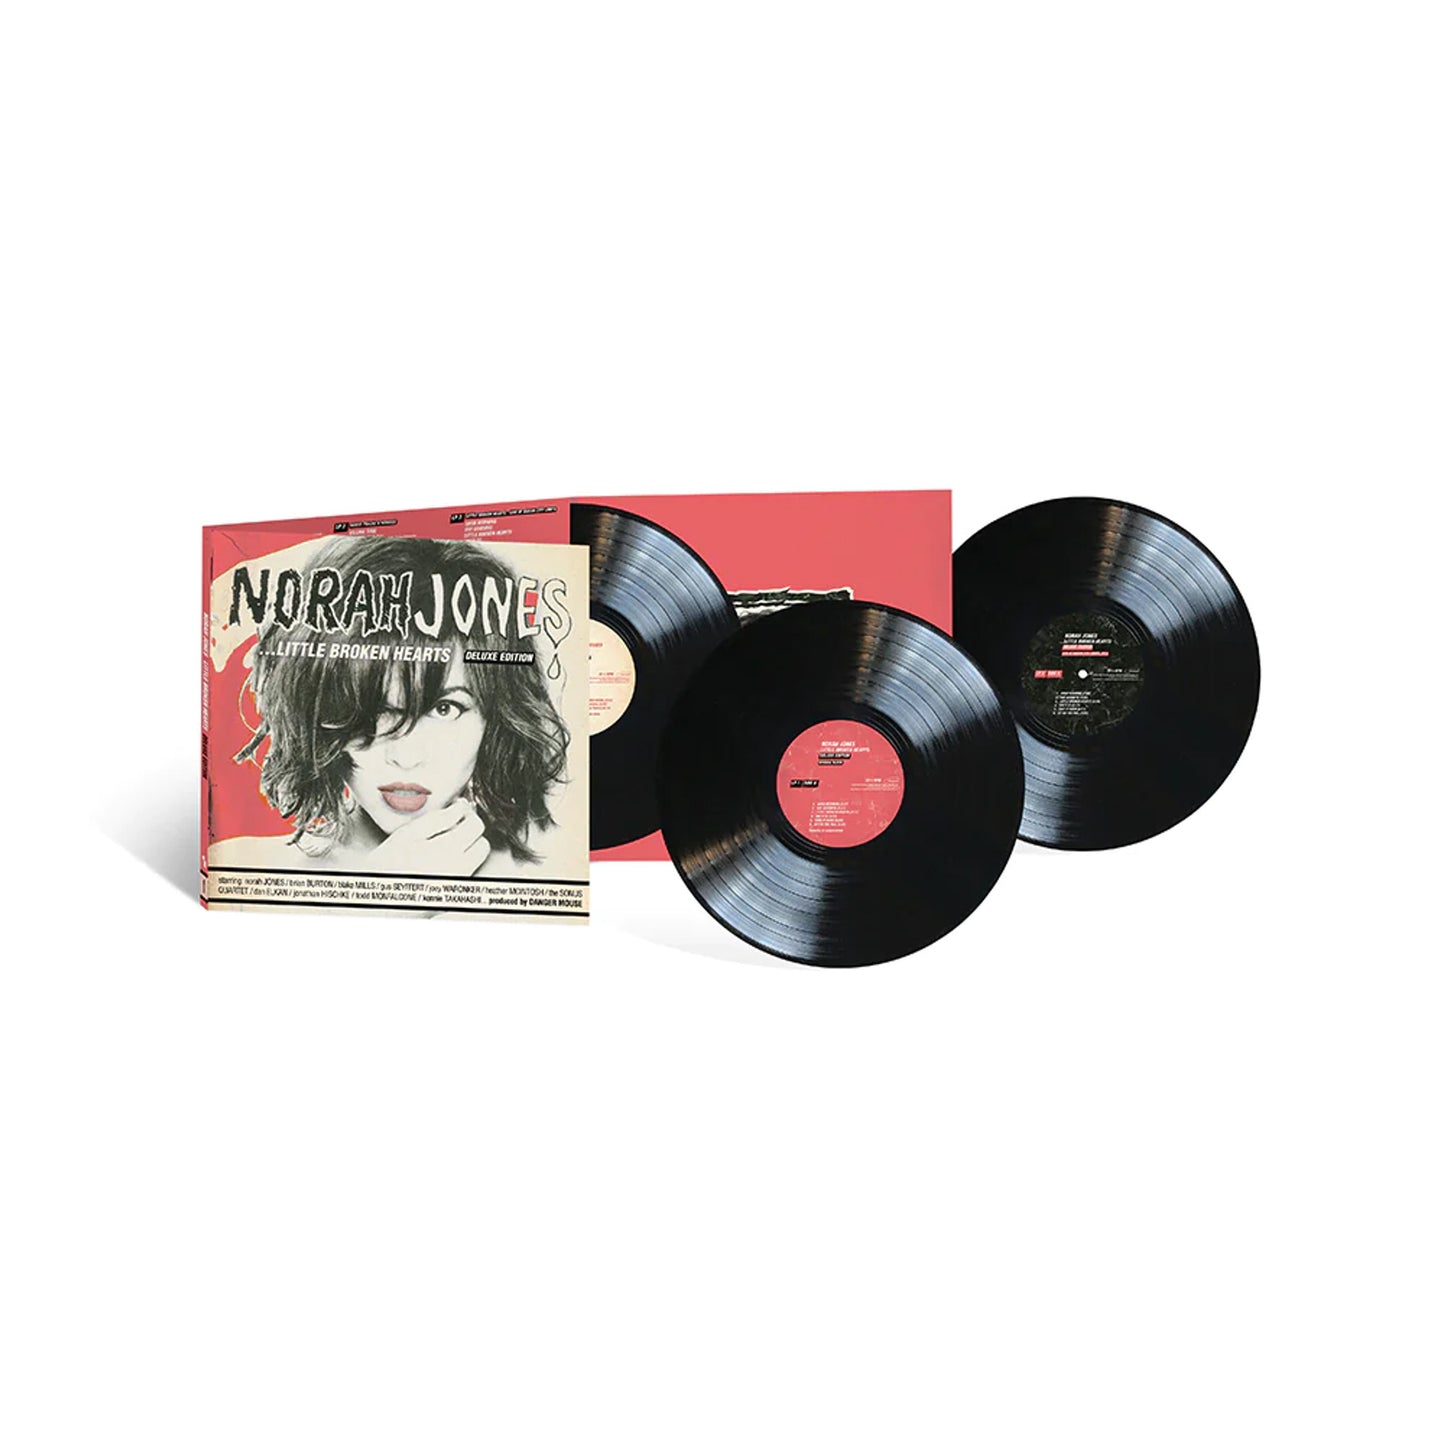 Norah Jones - ...Little Broken Hearts (Deluxe) - 3x LP